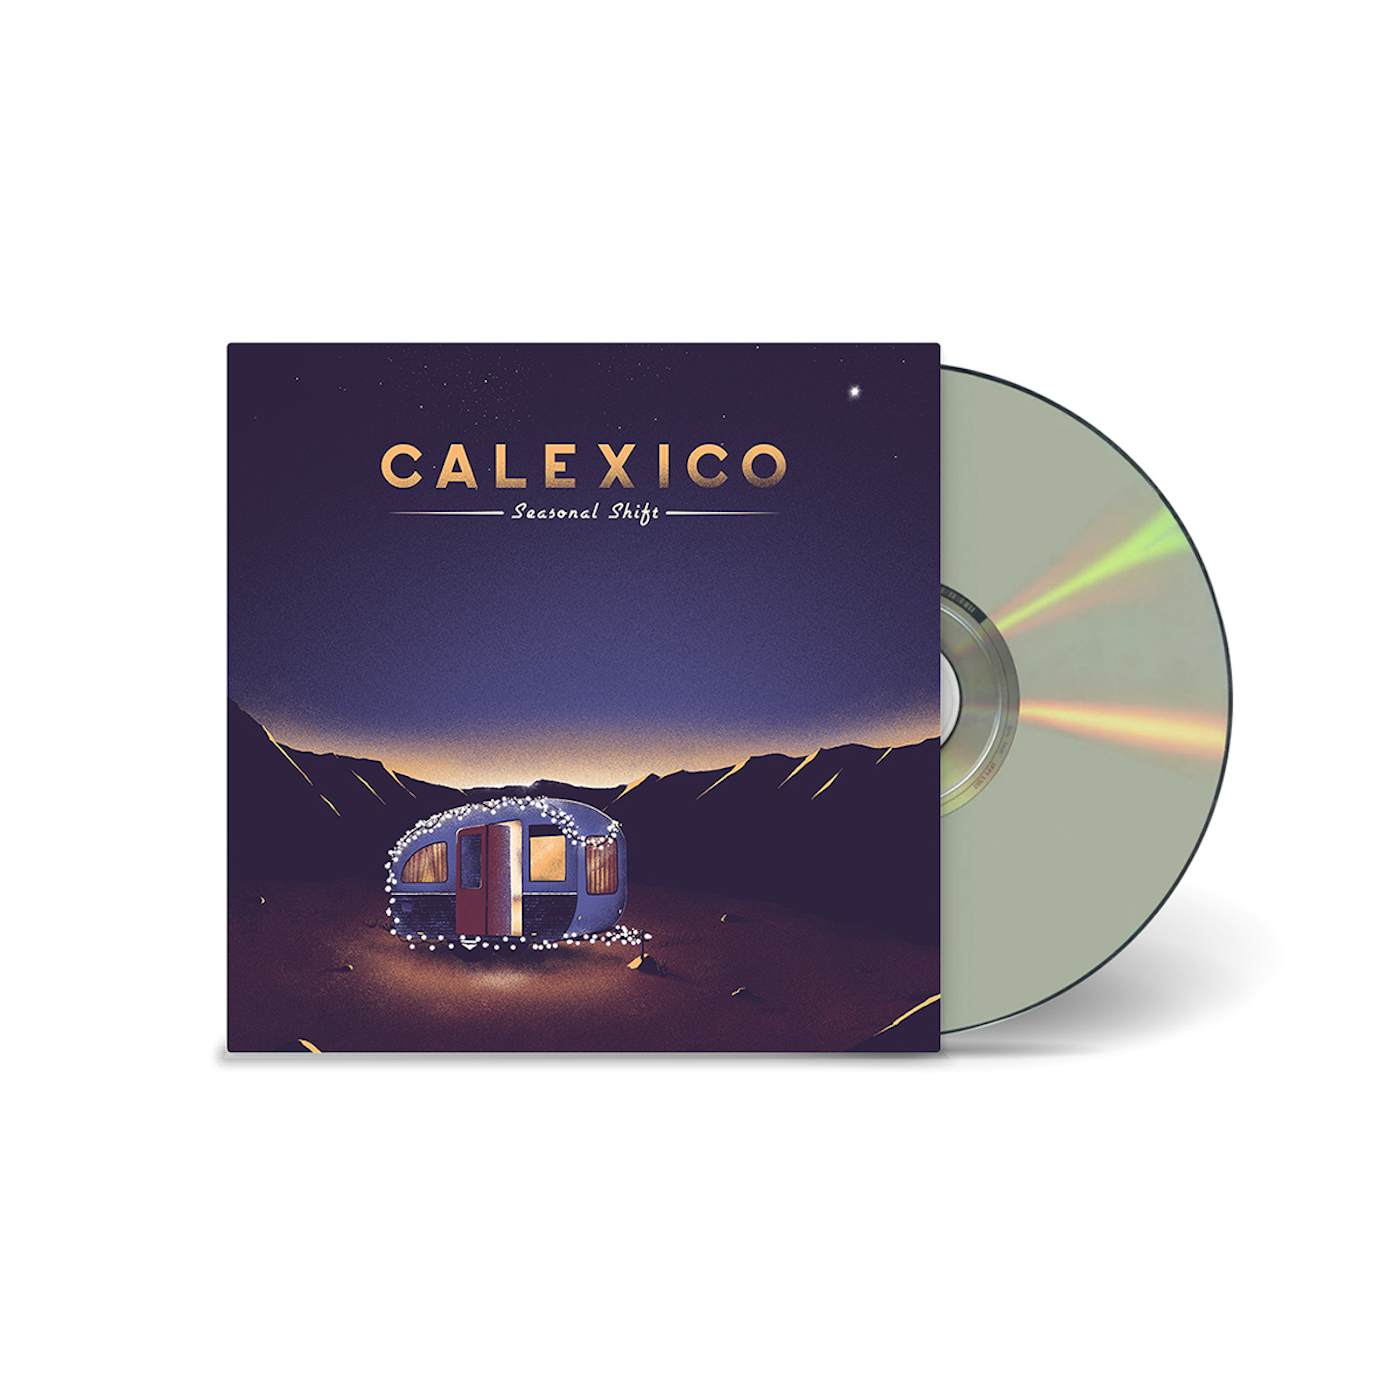 Calexico 'Seasonal Shift' CD